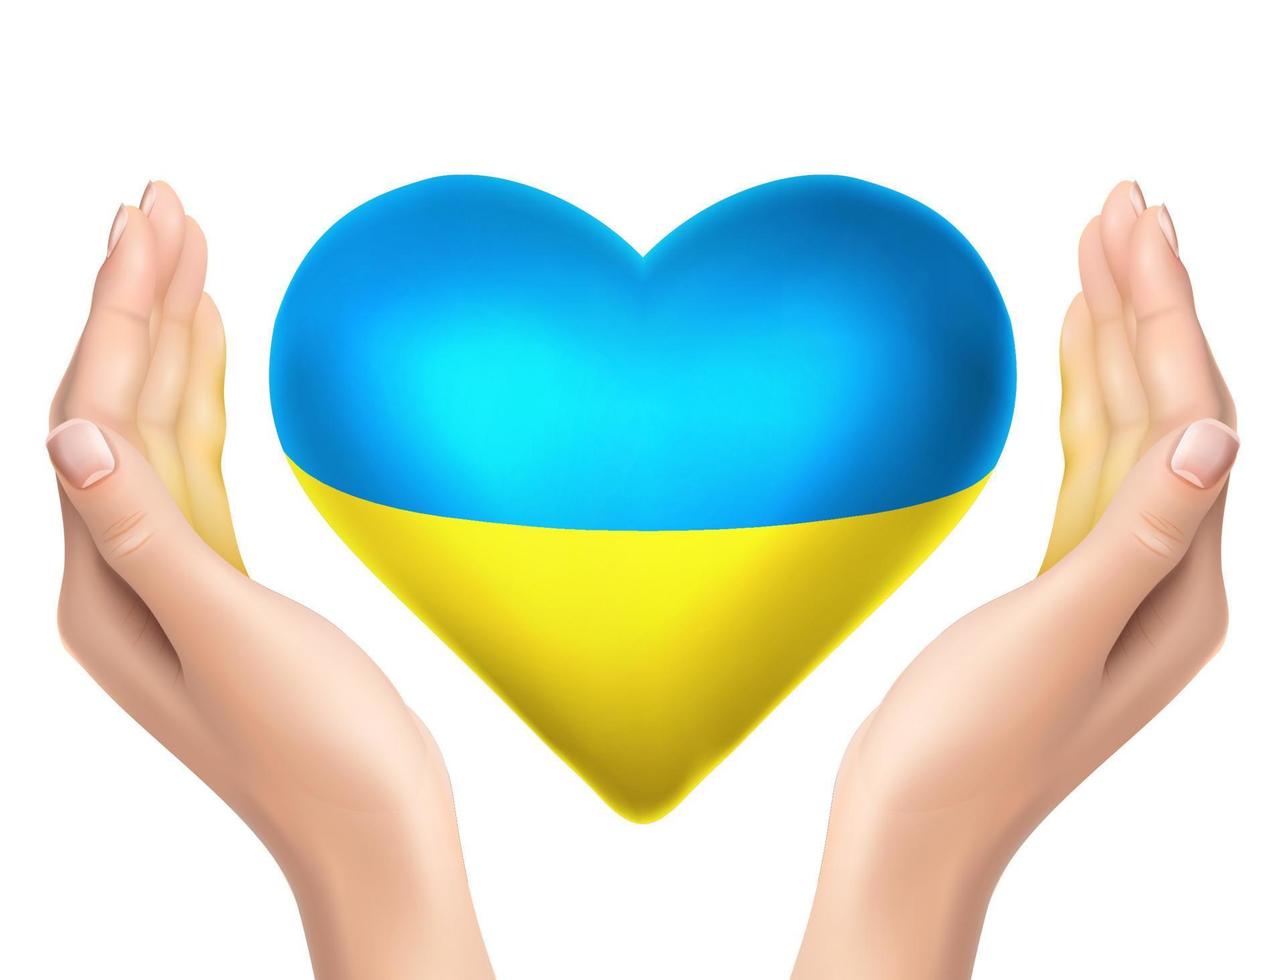 3D realistisches Vektorsymbol. ukrainische friedensflagge in form eines herzens mit realistischen händen, die sie halten. vektor